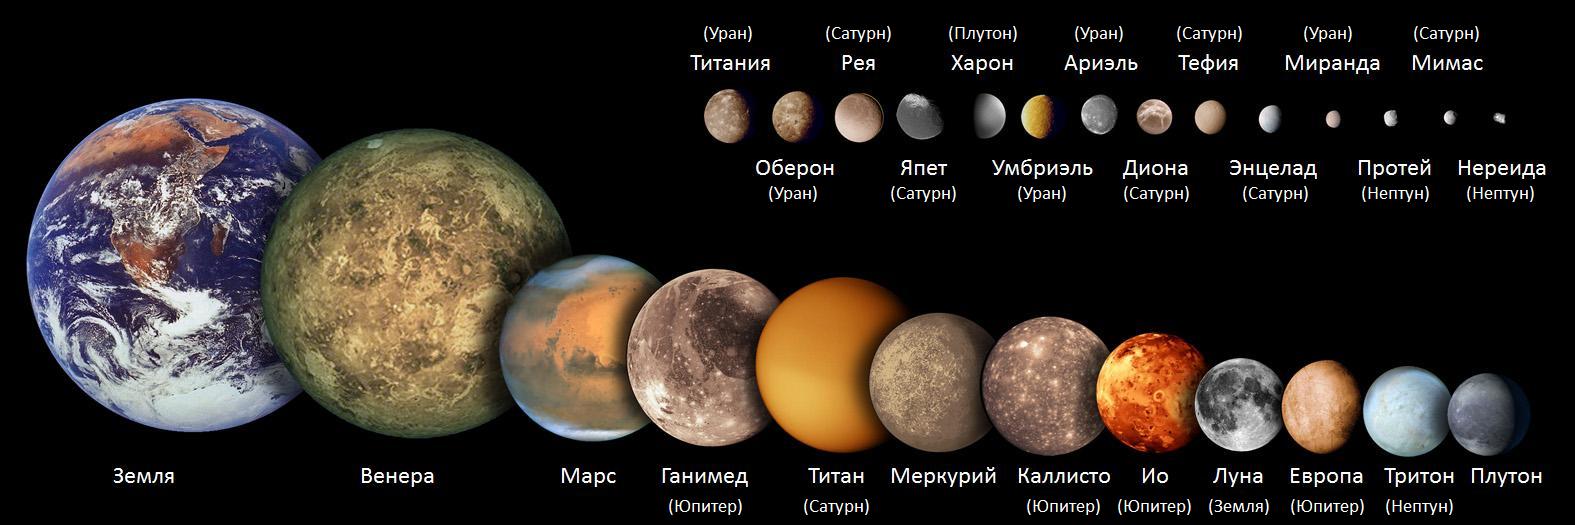 Сколько планет в солнечной системе фото и их названия